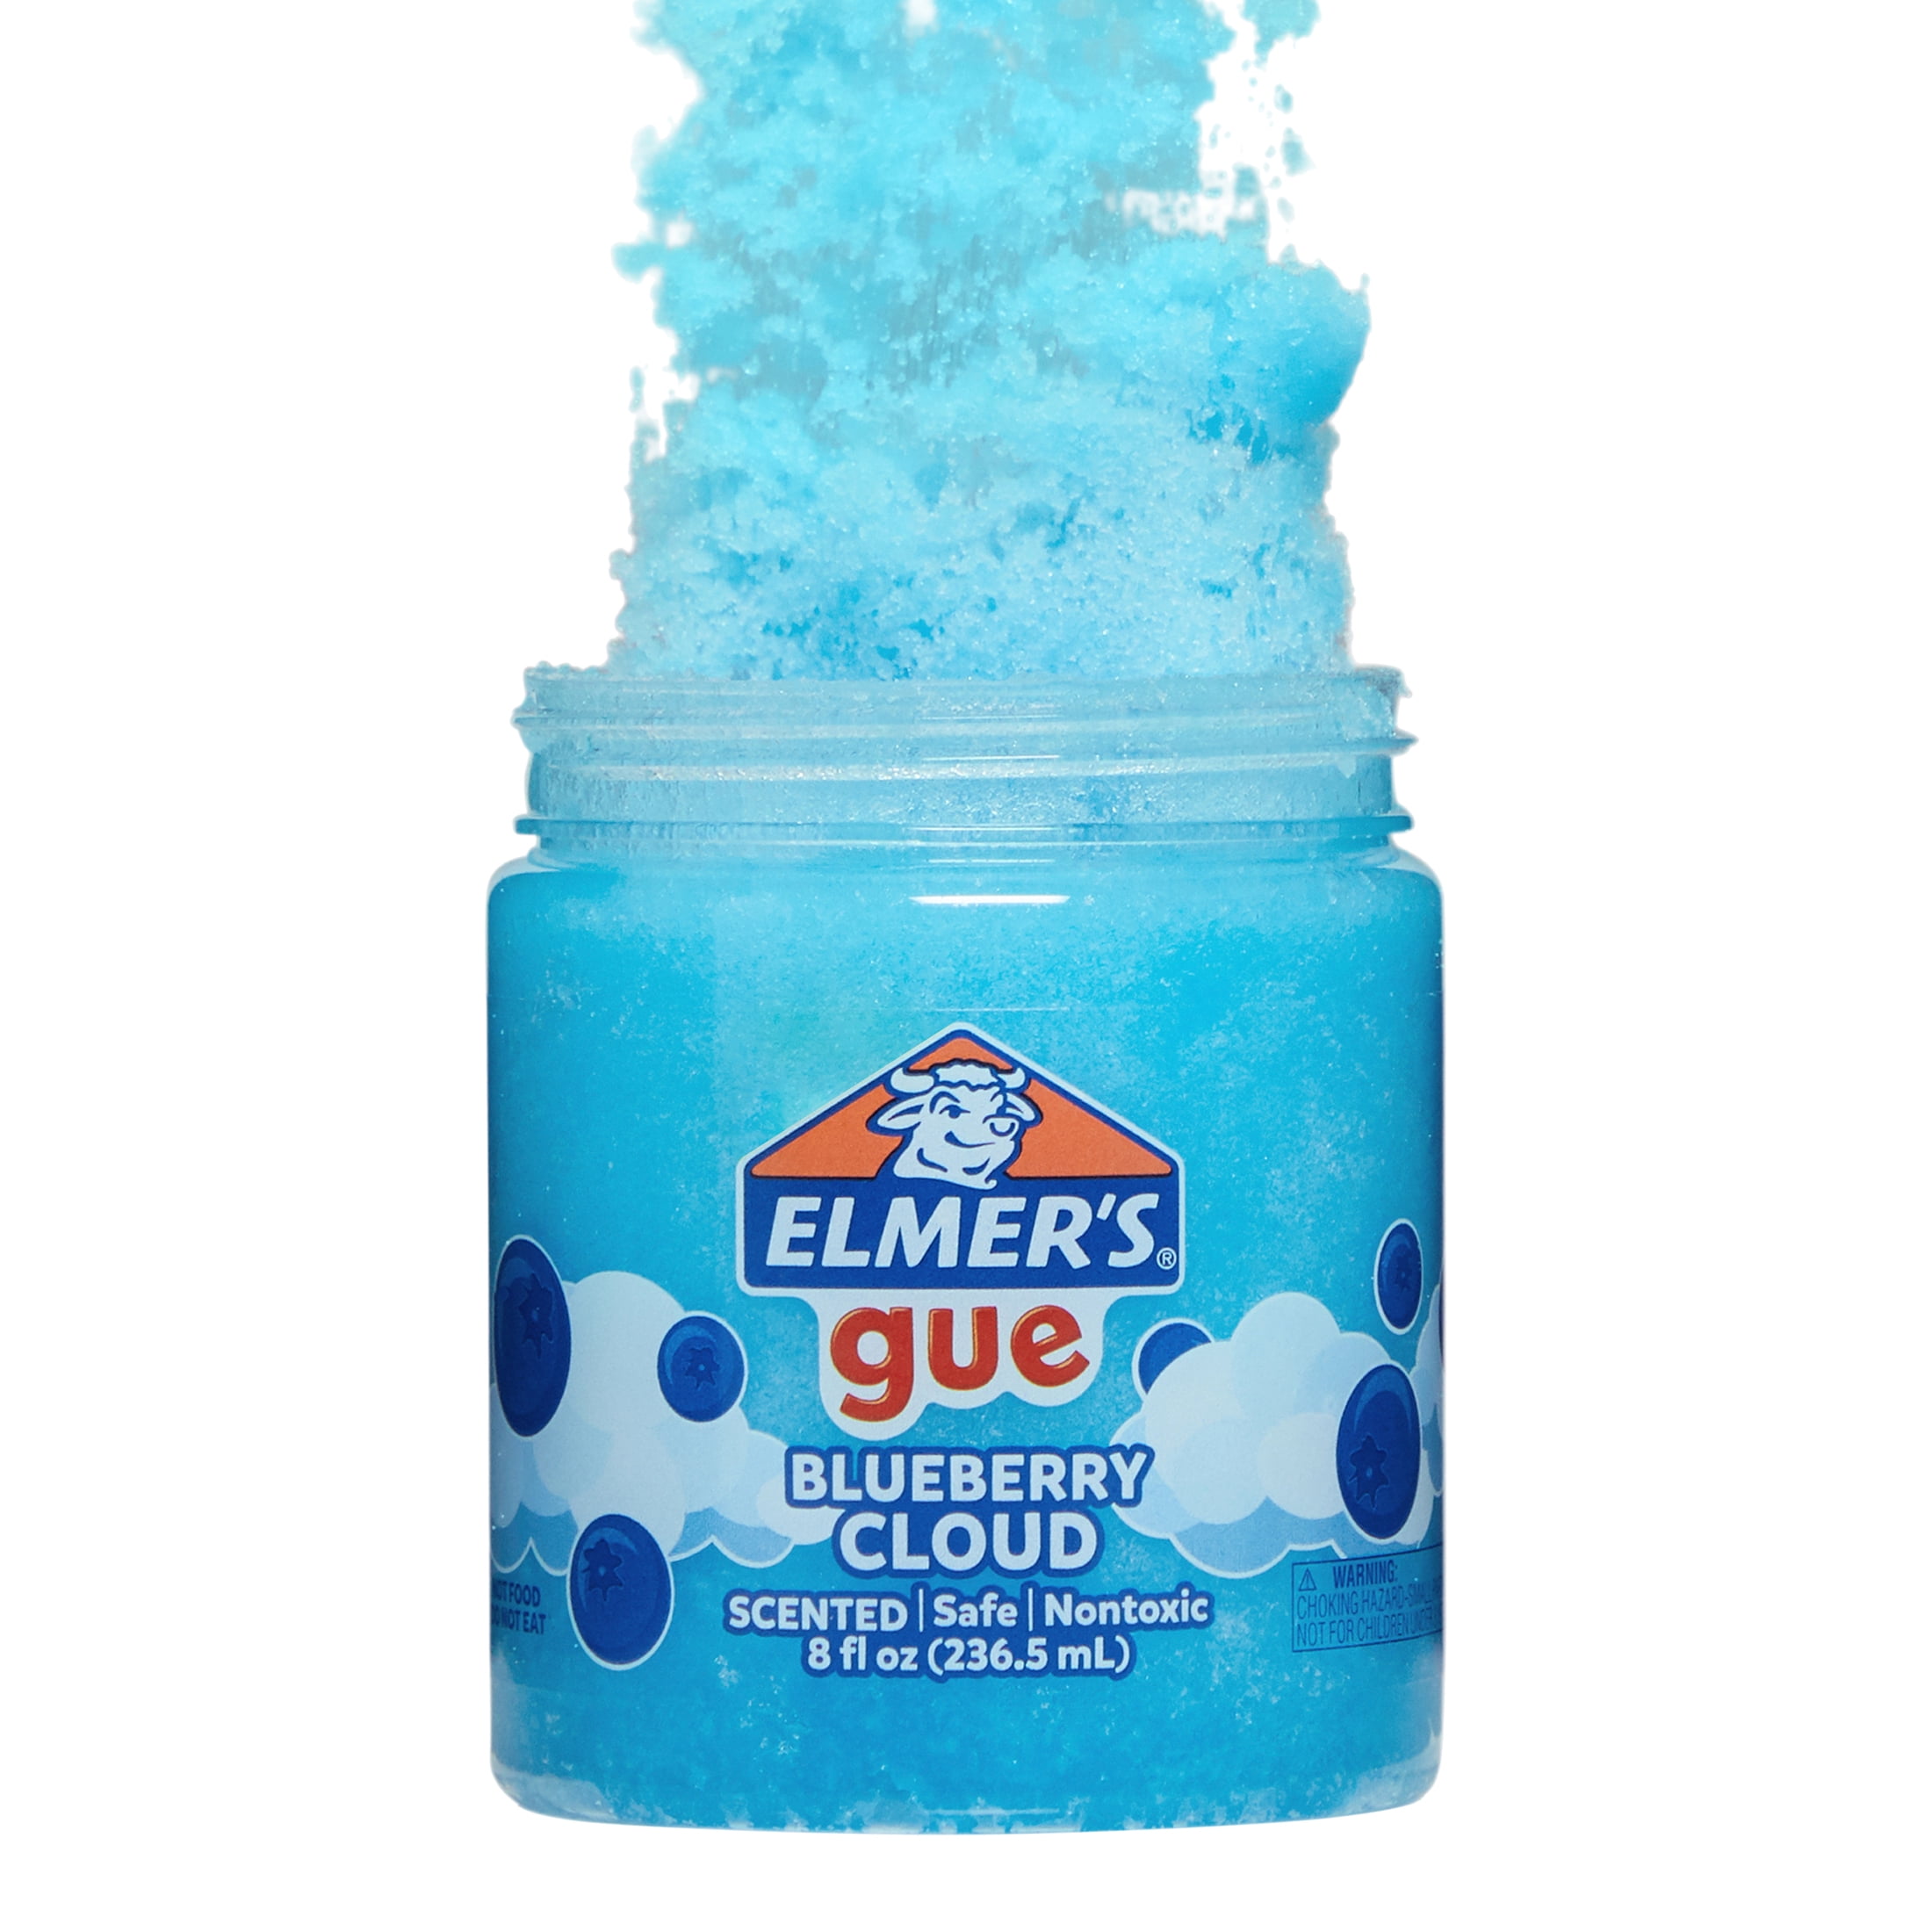 Elmer's Gue Pre-Made Slime 8oz-Strawberry Cloud, 1 count - Fry's